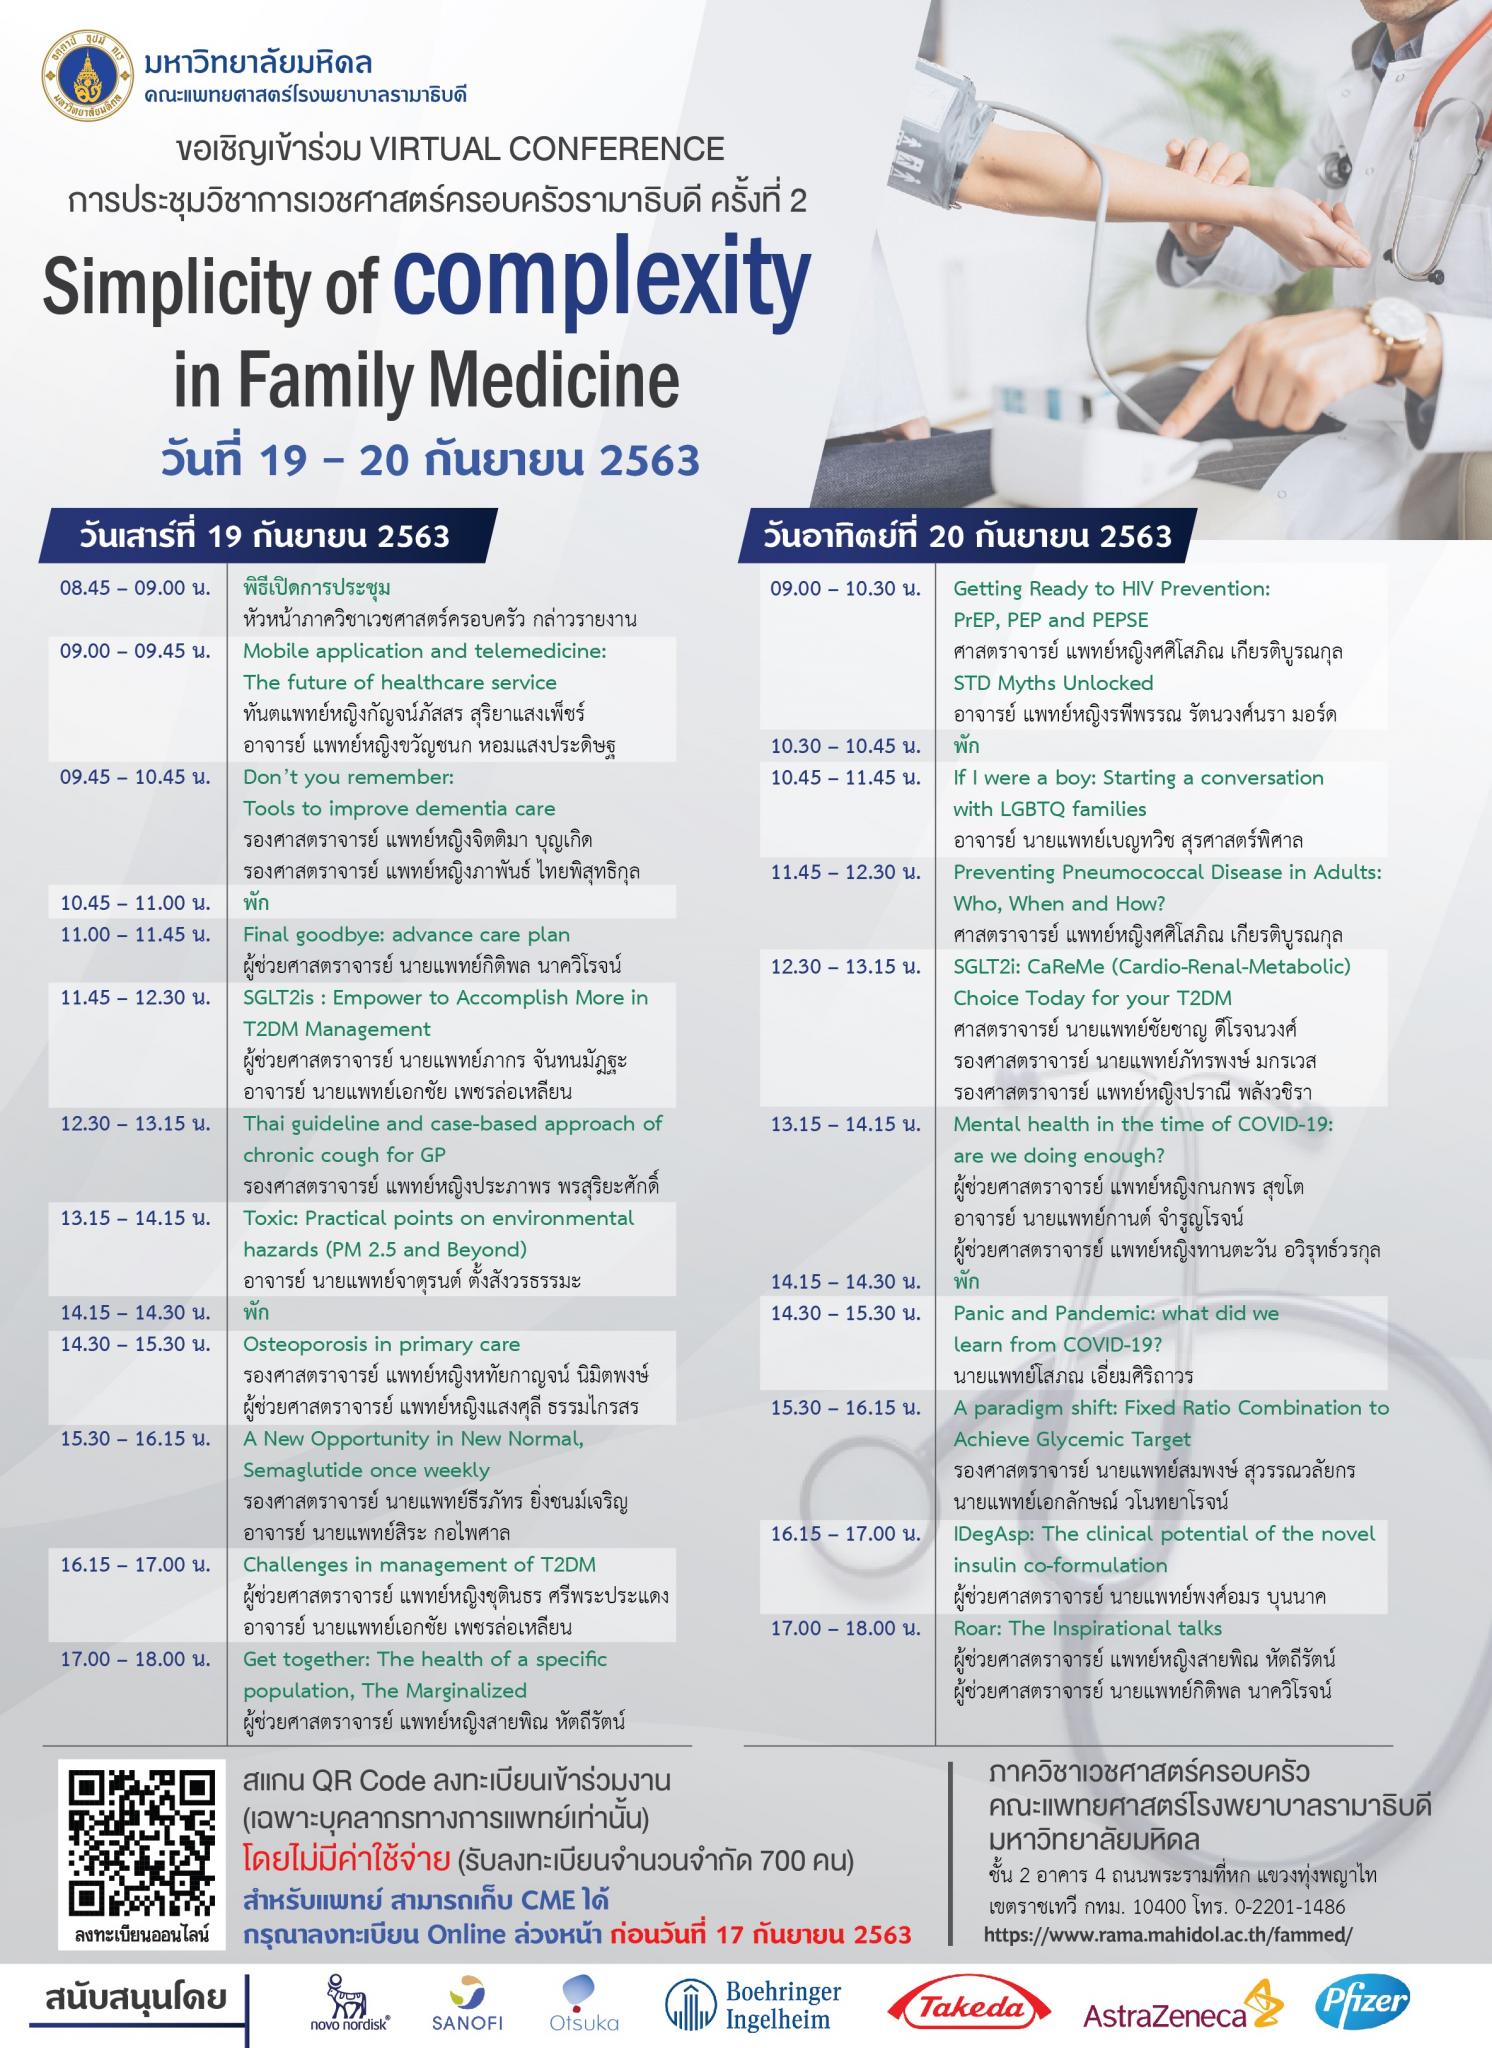 ขอเชิญร่วม VIRTUAL CONFERENCE การประชุมวิชาการเวชศาสตร์ครอบครัวรามาธิบดี ครั้งที่ 2 Simplicity of complexity in Family Medicine